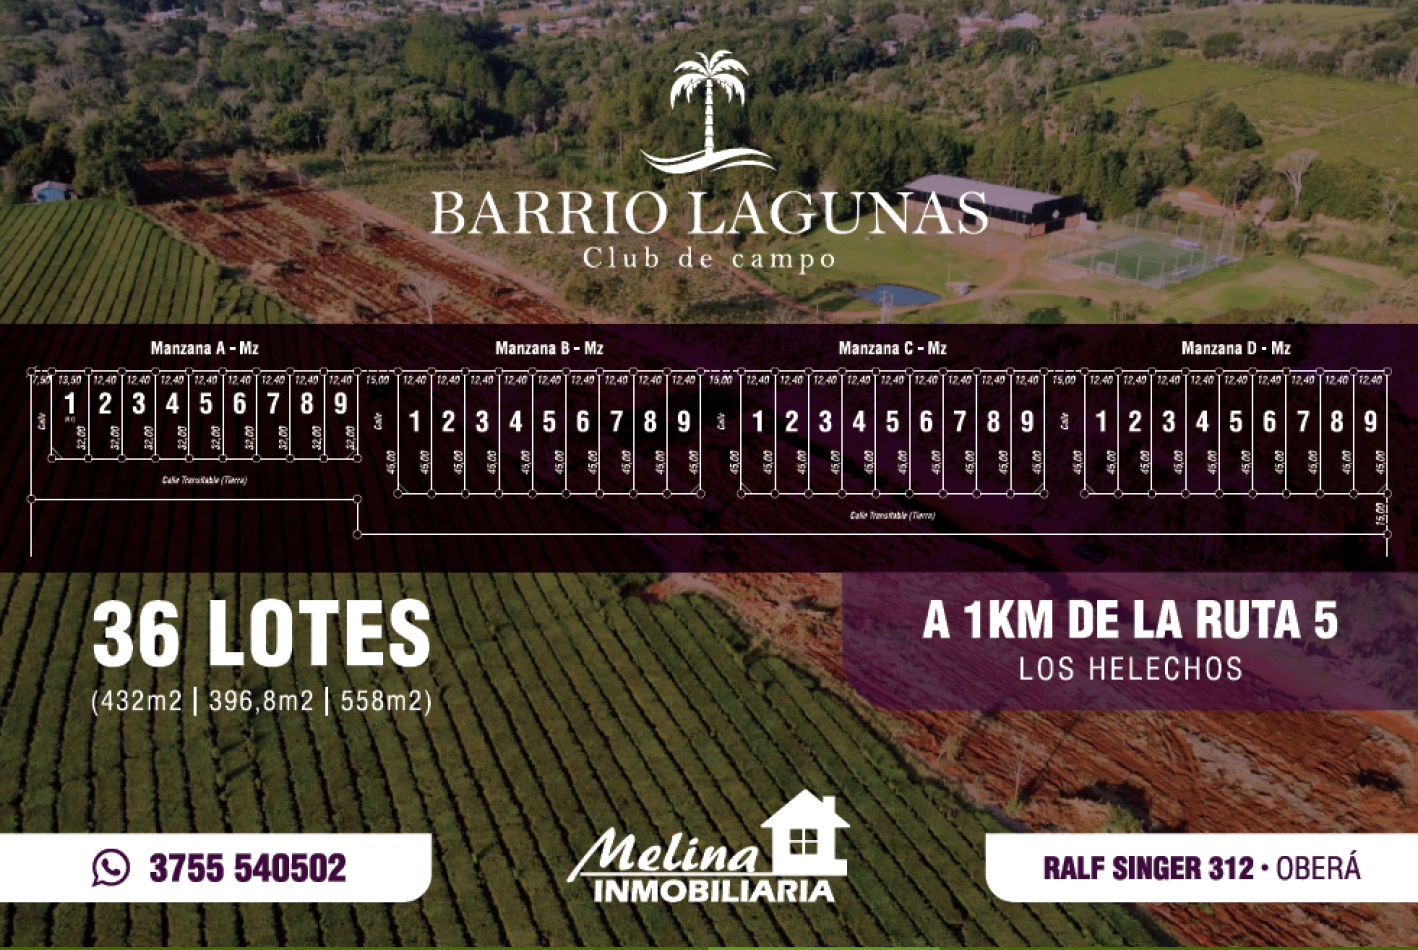 Loteo Barrio Lagunas - Club de Campo